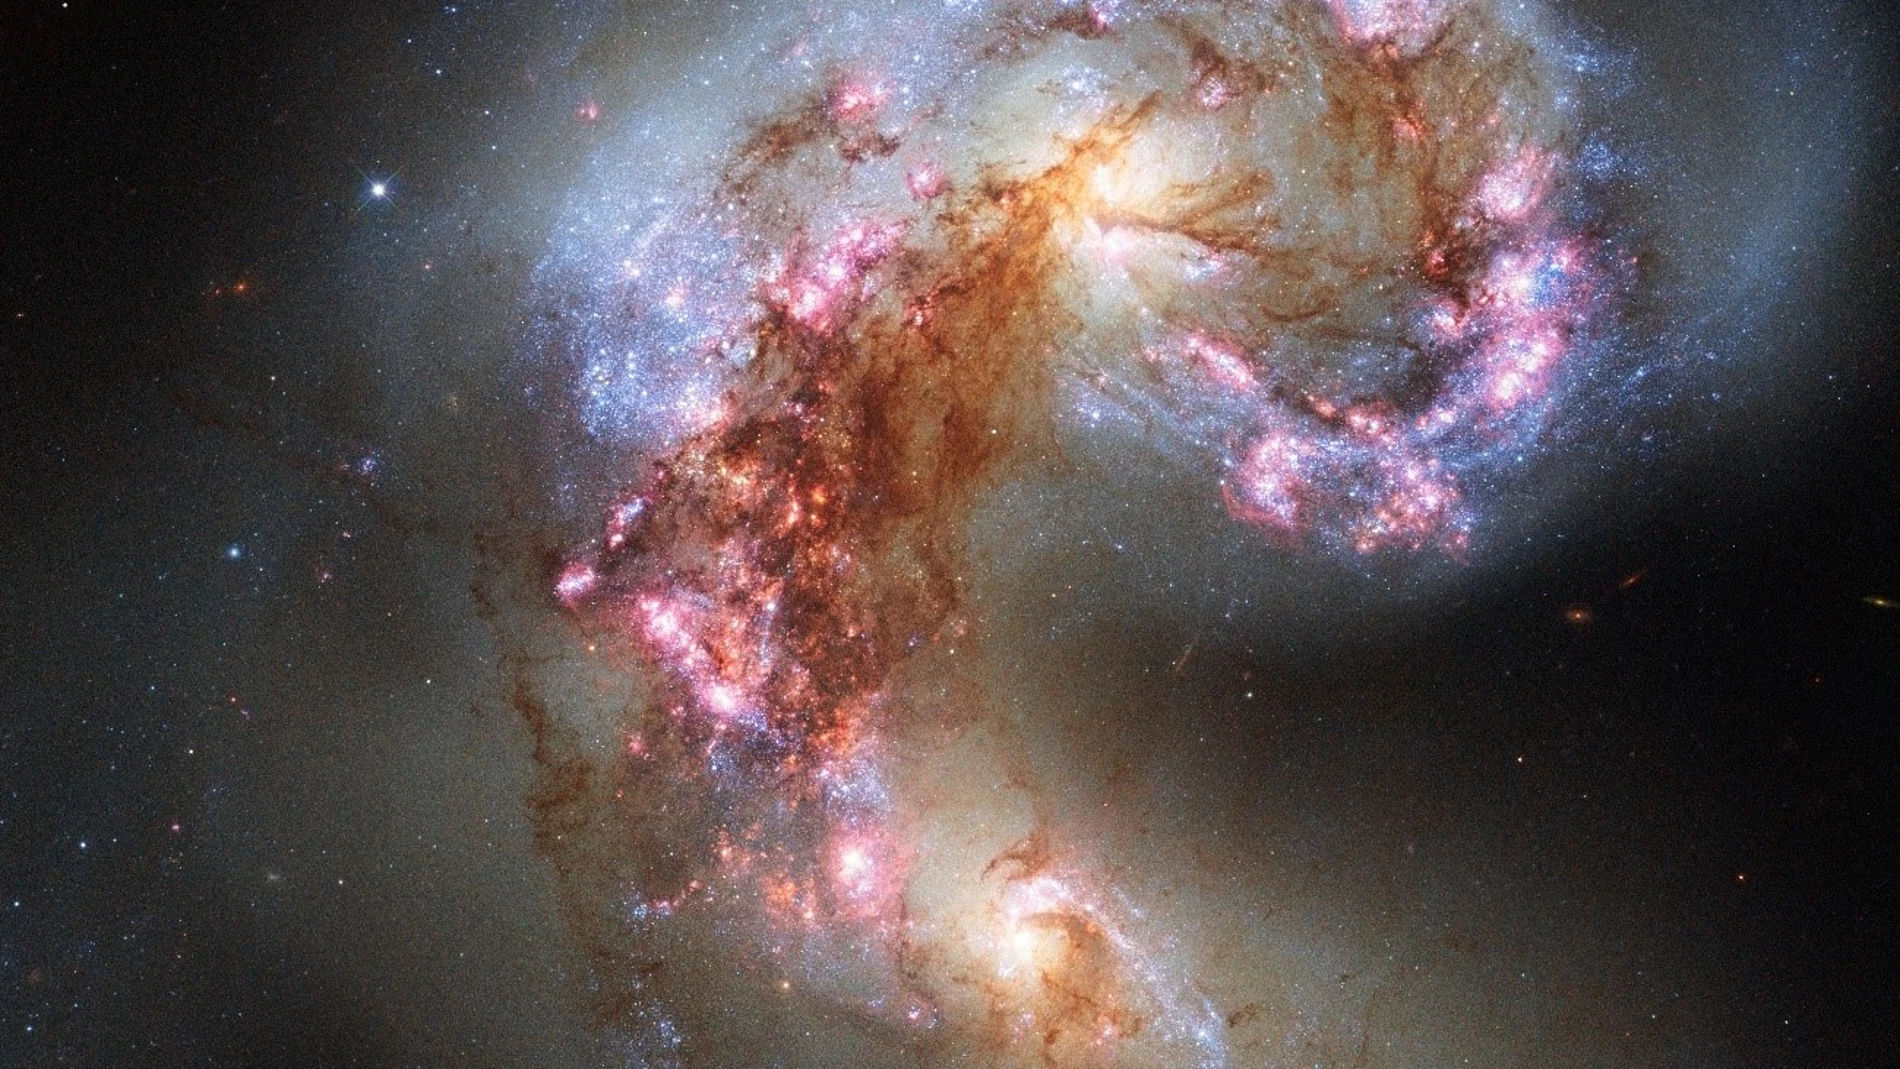 Imagen de las galaxias Antennae tomada por la NASA mediante el telescopio espacial Hubble. Estas dos galaxias intercambian materia a más de 70 millones de años luz de distancia, por lo que viajar hasta ellas es implantable aunque pudiéramos movernos a la velocidad de la luz. La luz que nos llega de ellas escapó de sus estrellas cuando los dinosaurios todavía dominaban la Tierra.